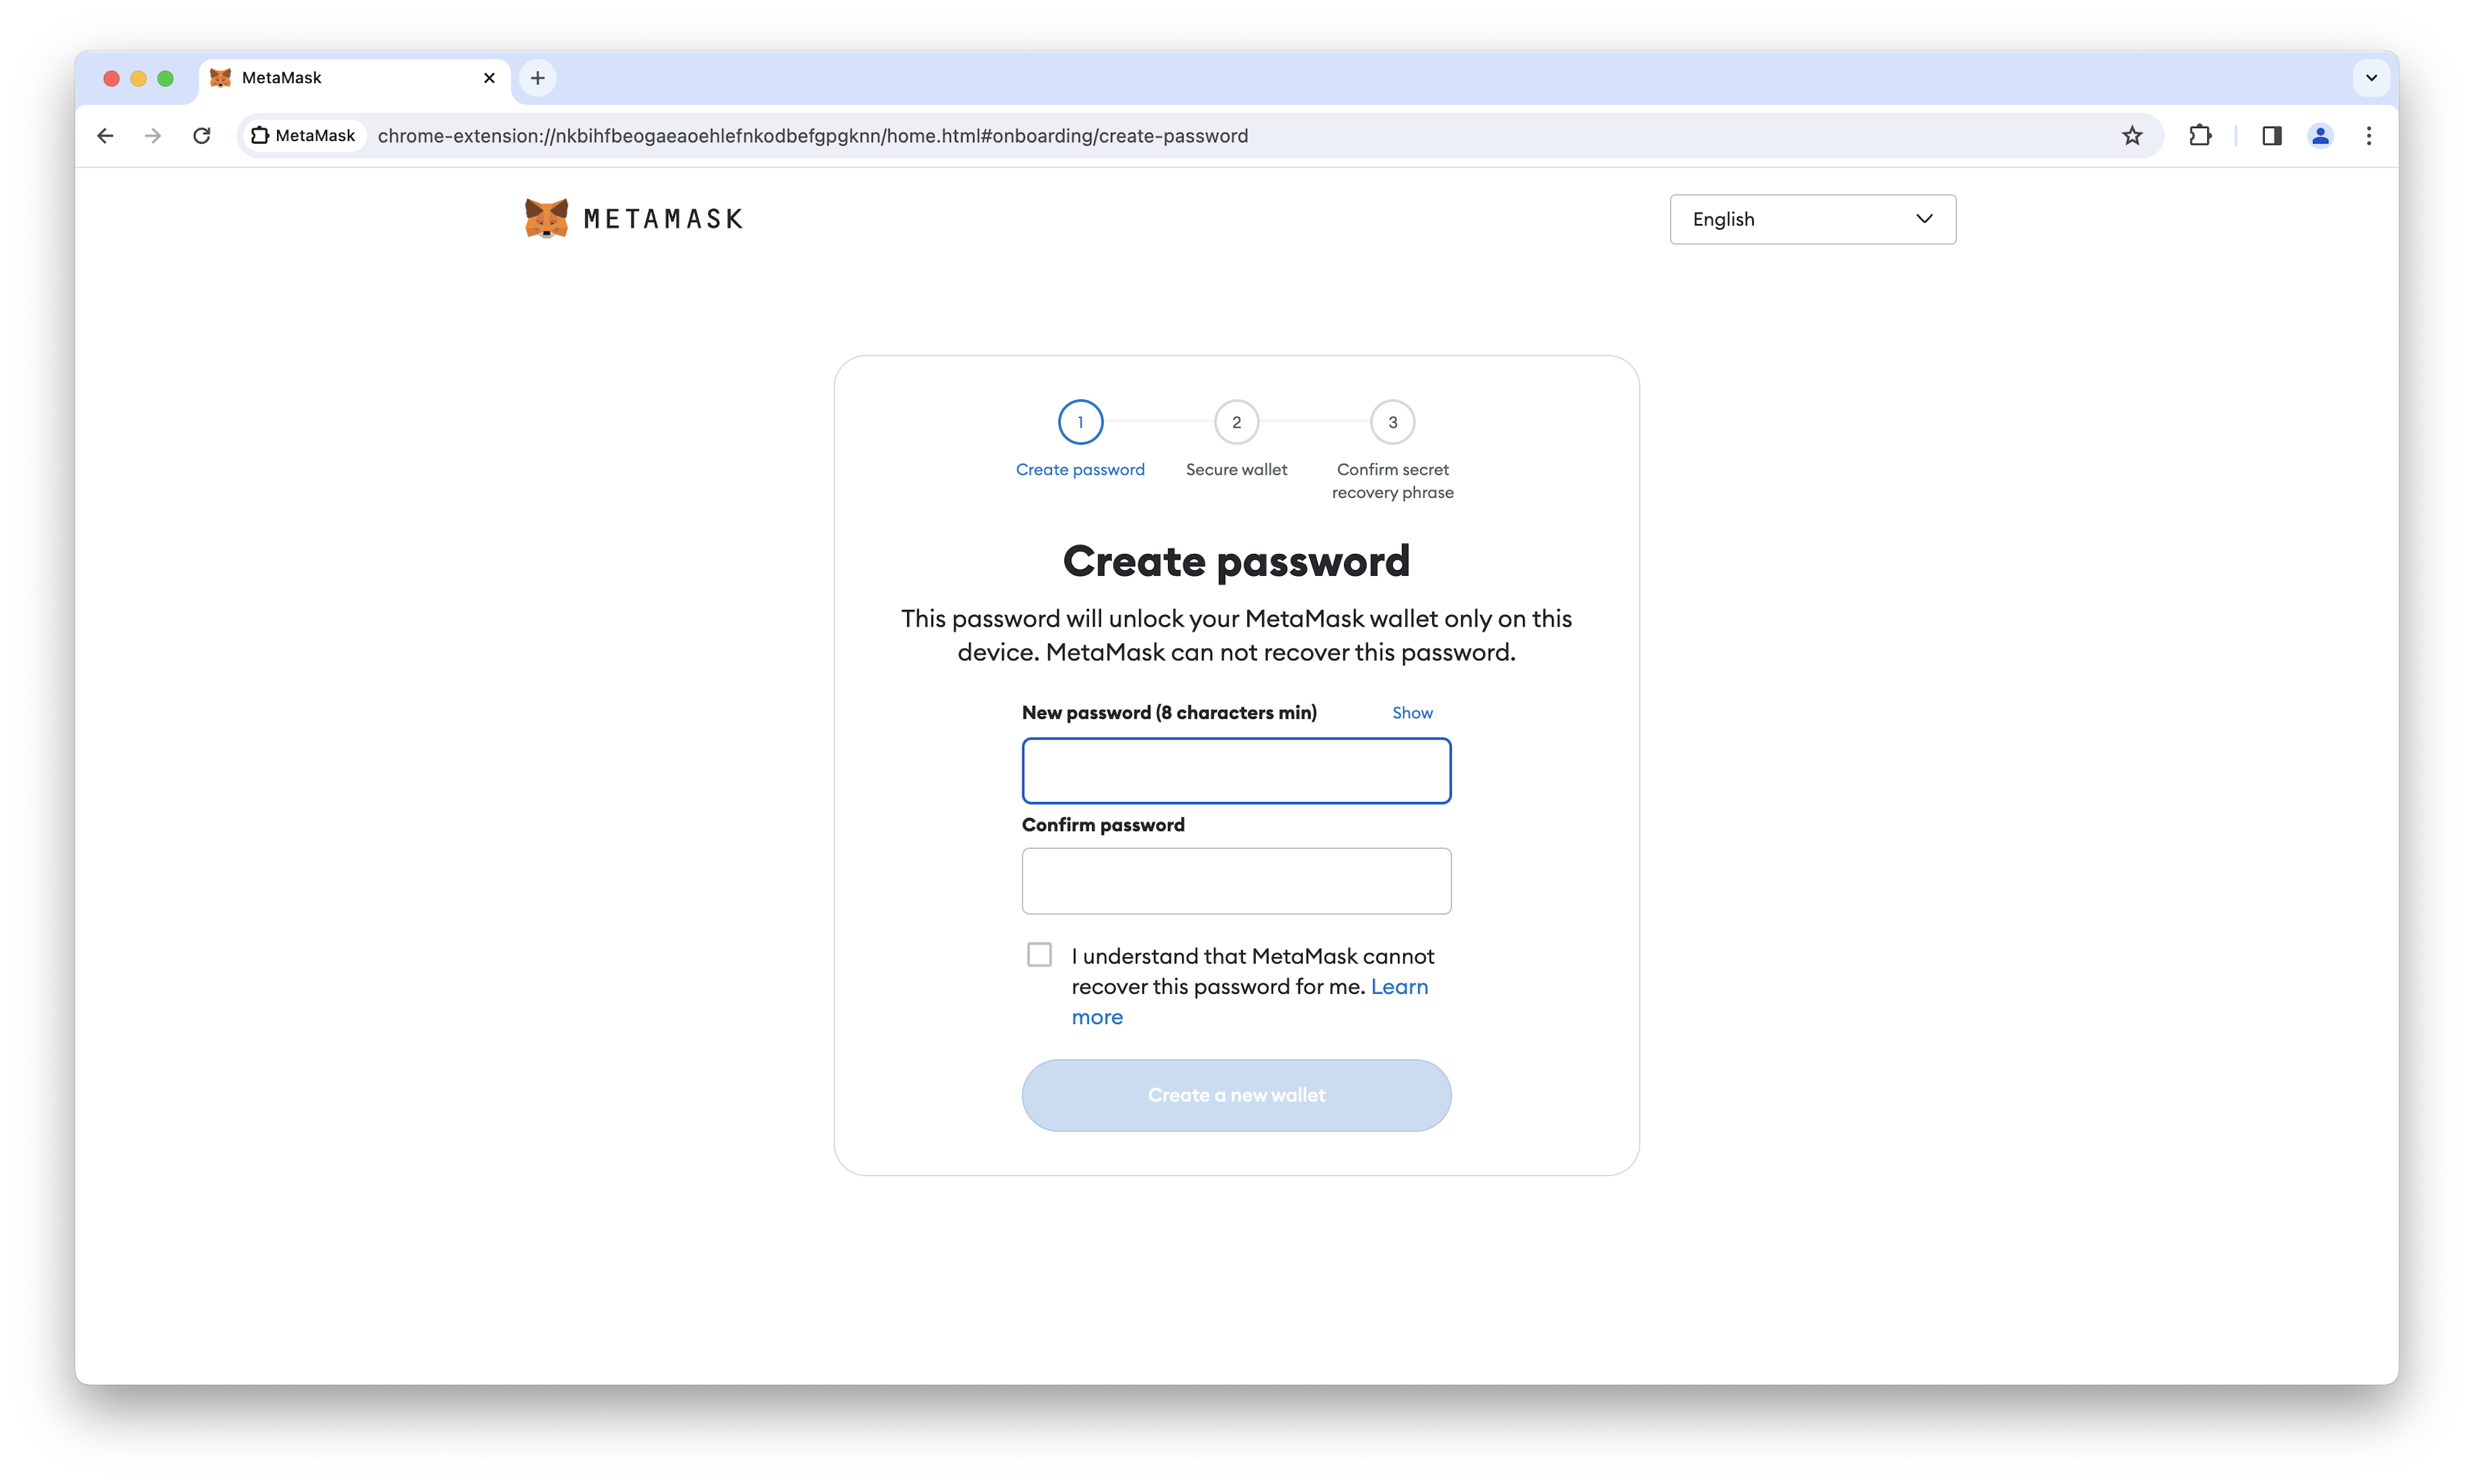 MetaMask password creation page.